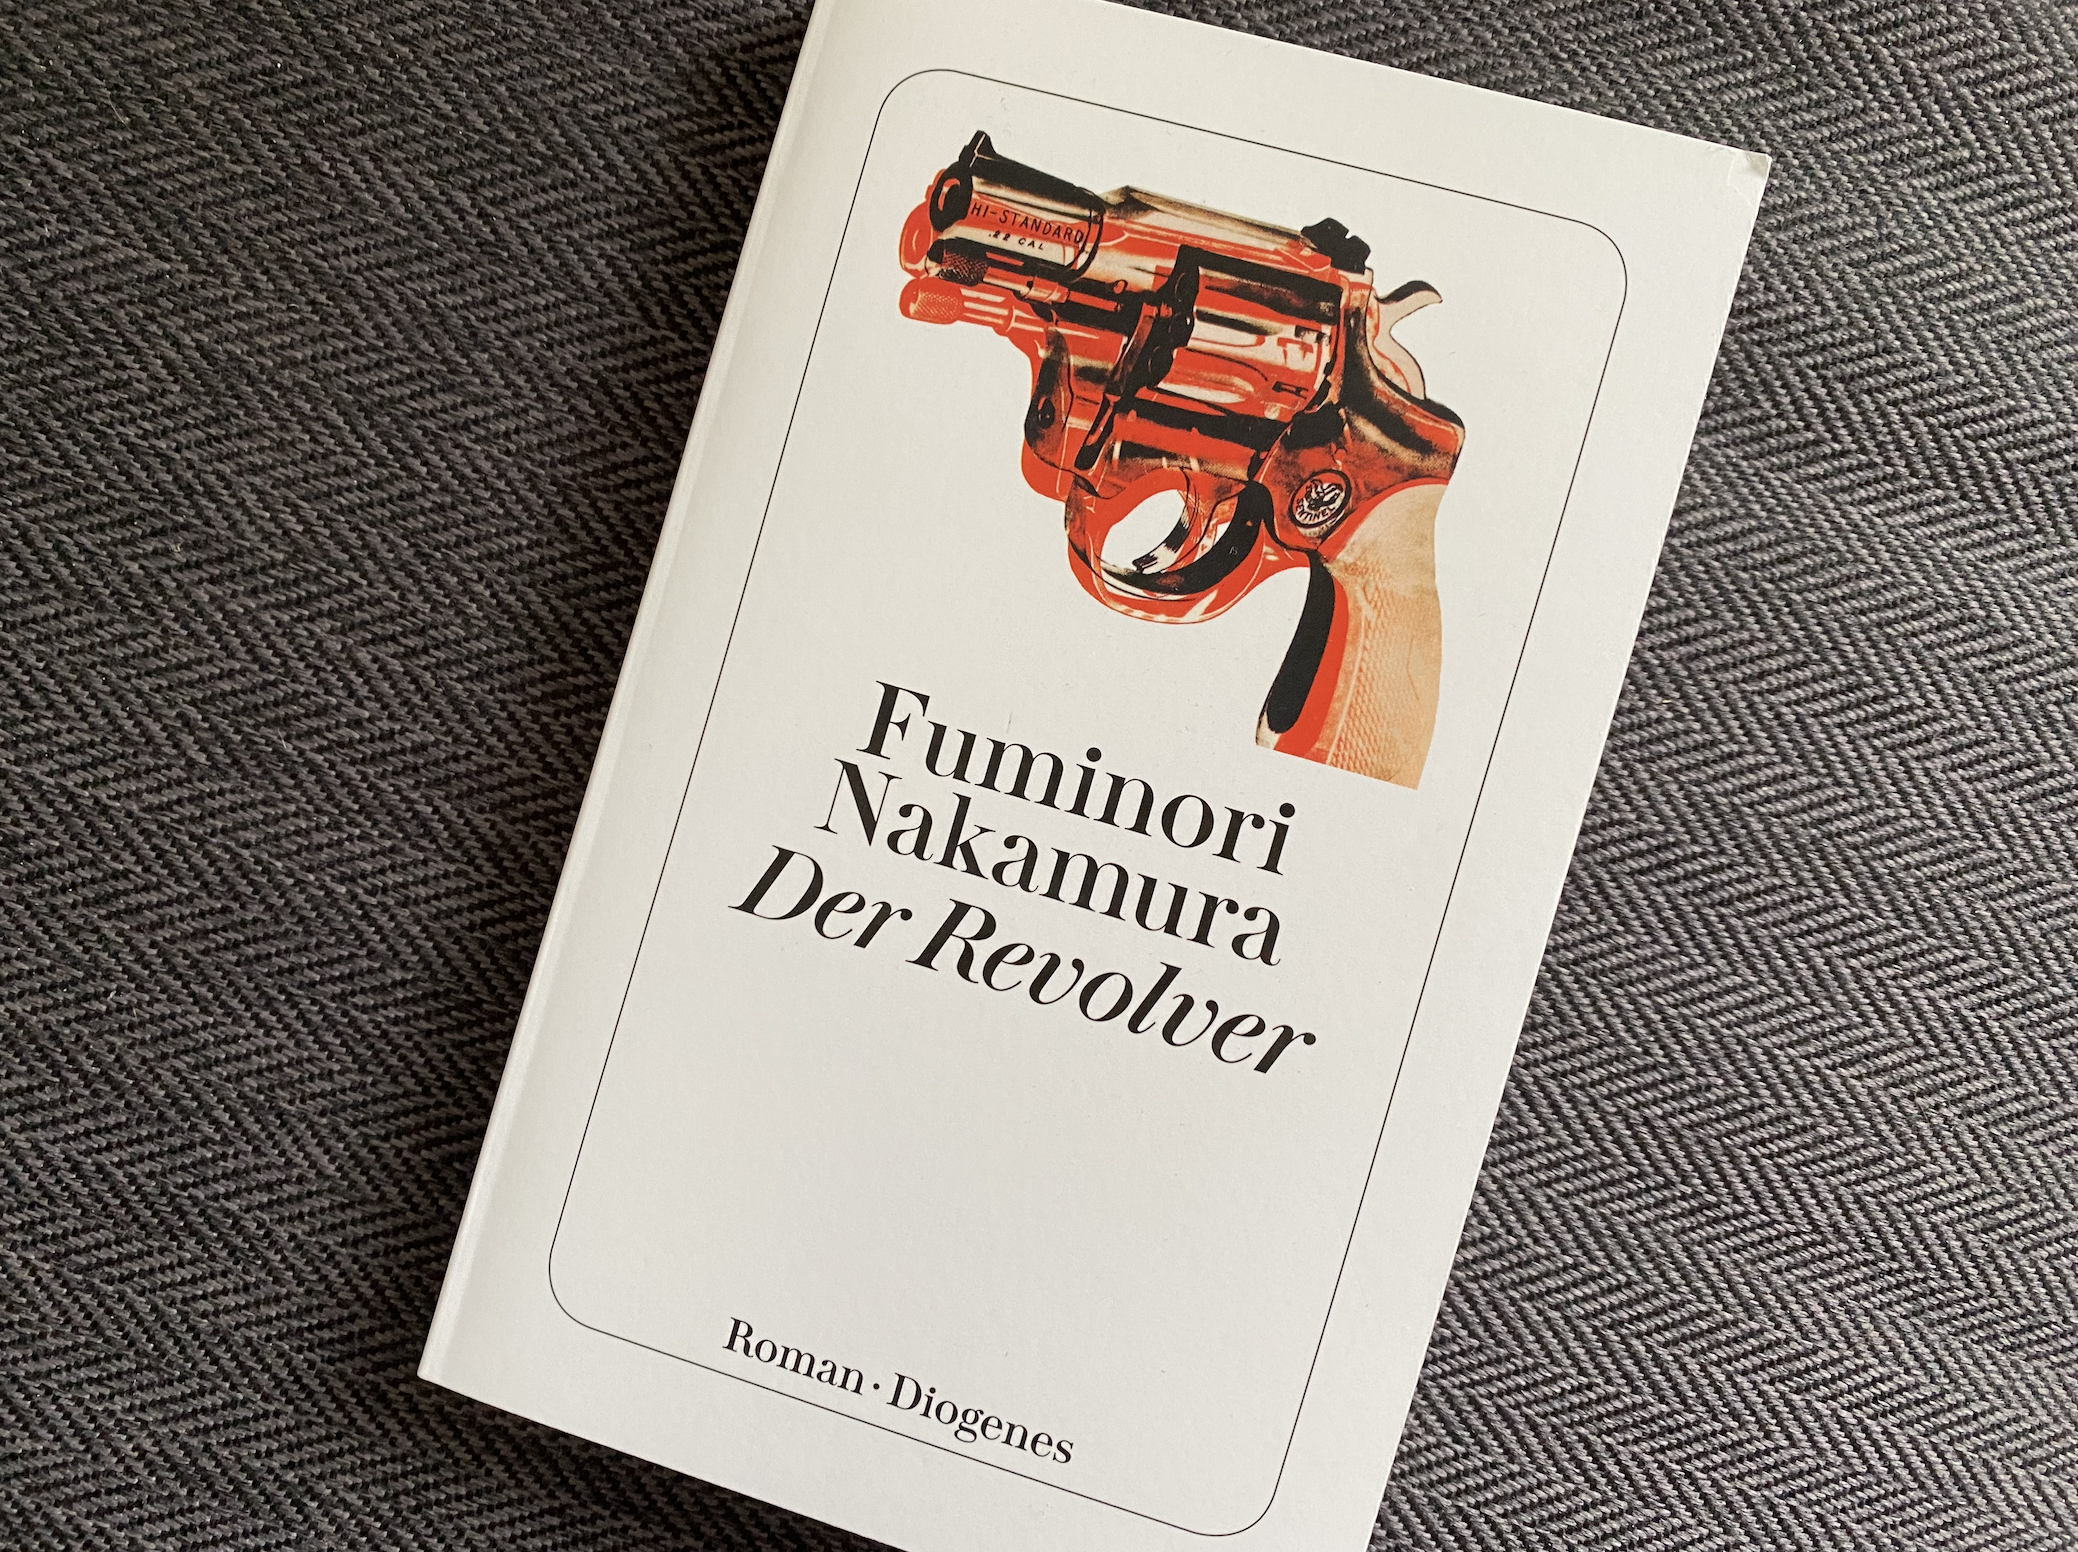 Fuminori Nakamura - Der Revolver